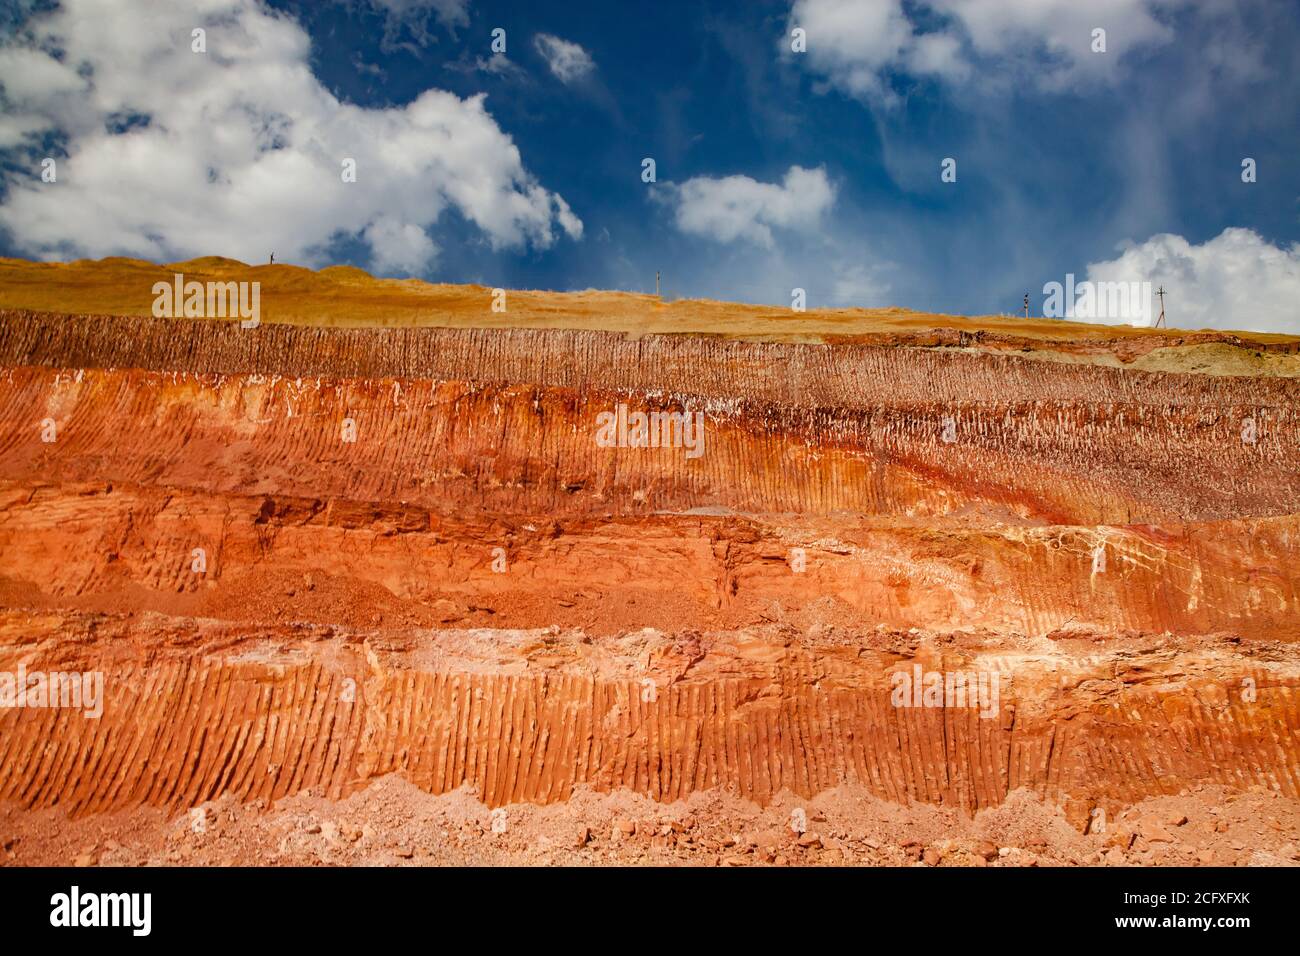 Arkalyk/Kazakhstan - Maggio 15 2012: Estrazione e trasporto di minerali di alluminio. Cava di argilla bauxite. Graffi sul terreno dalla benna dell'escavatore. Foto Stock